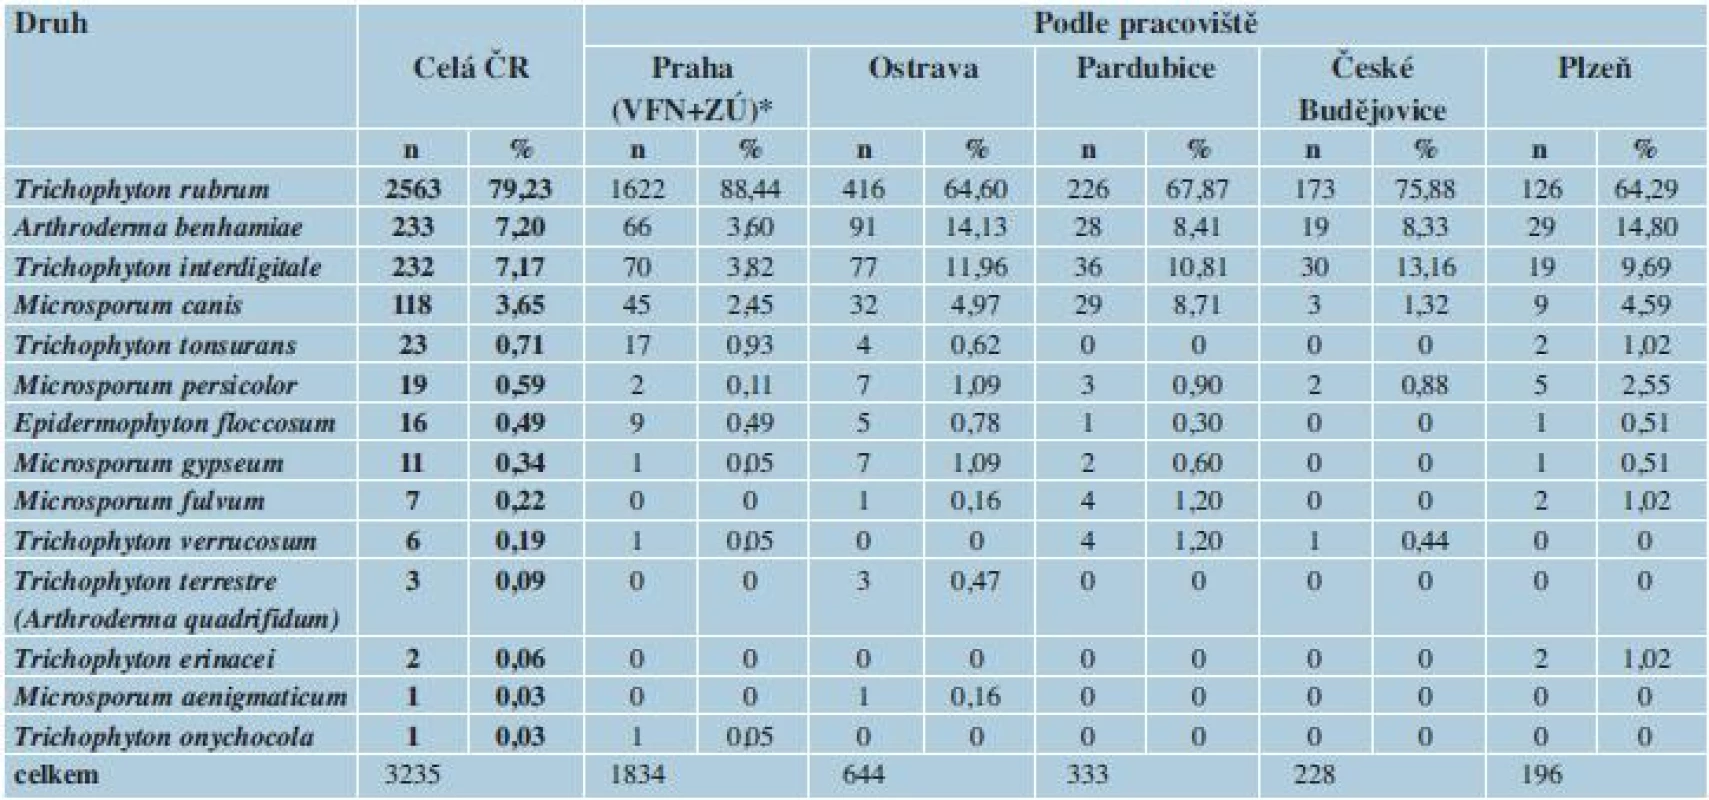 Původci dermatofytóz v ČR v období červenec 2011 až červen 2013